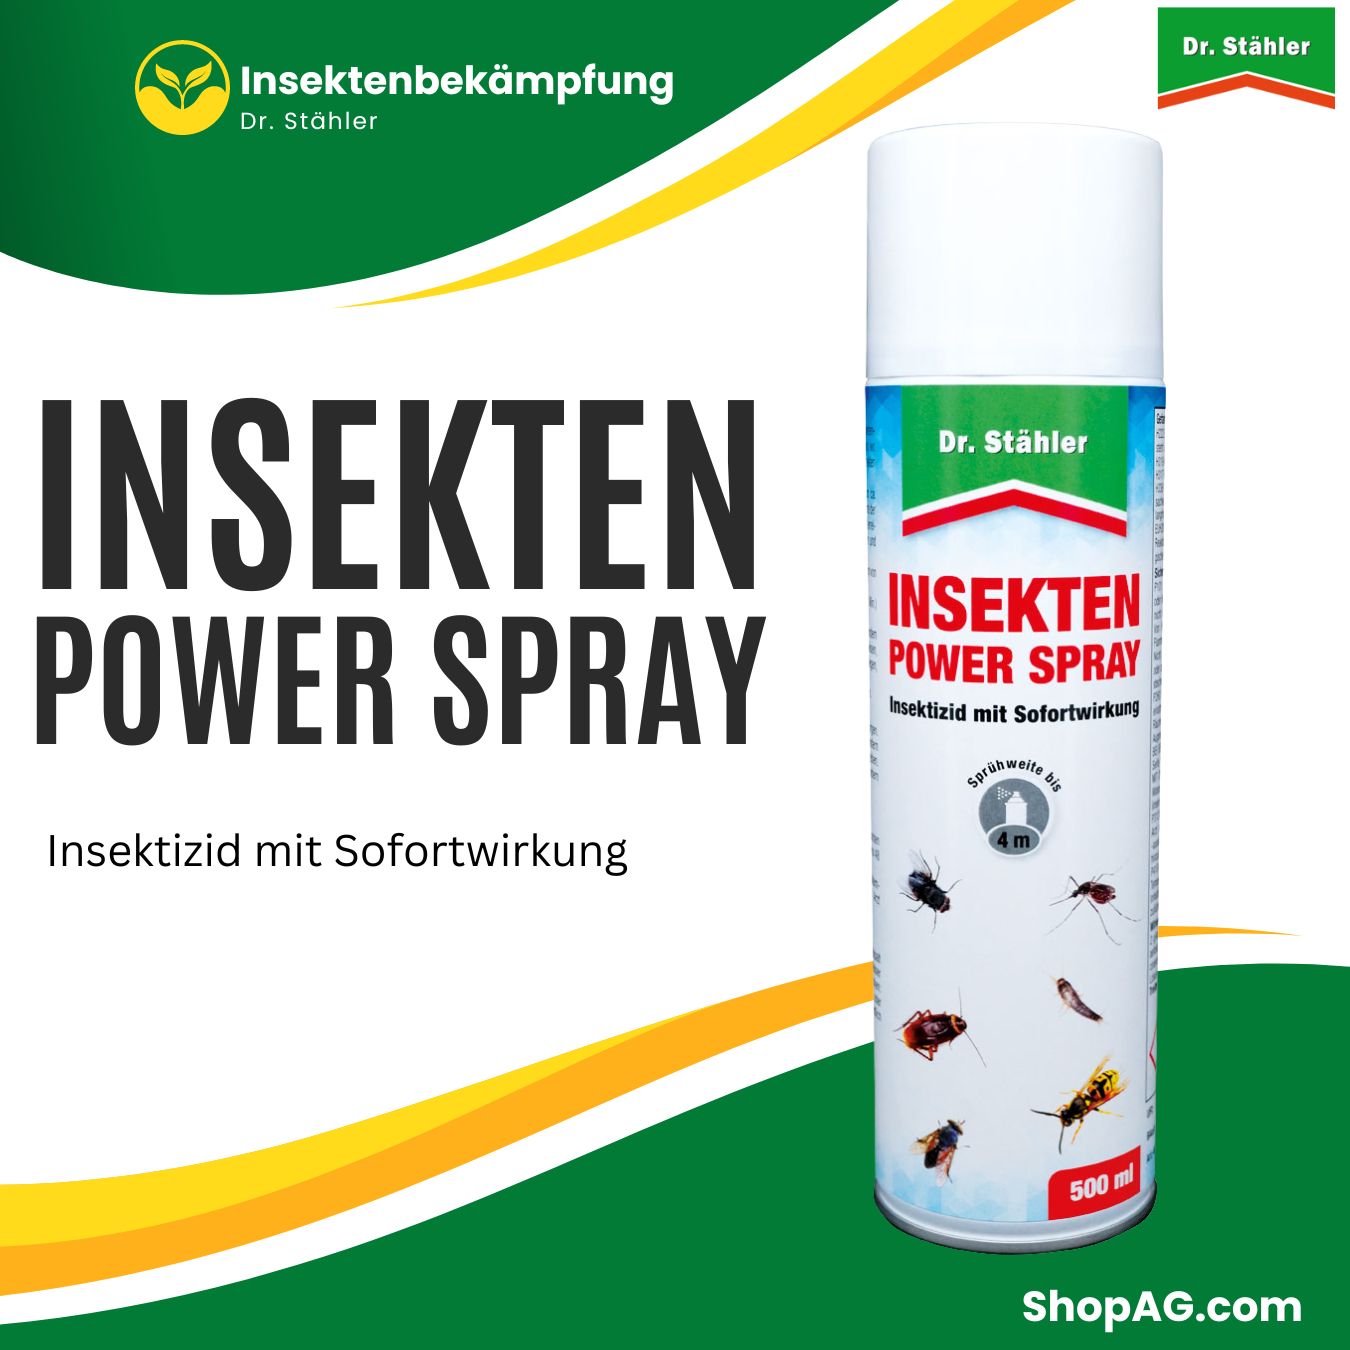 Insekten Power Spray Insektizid gegen fliegendes und kriechendes Ungeziefer